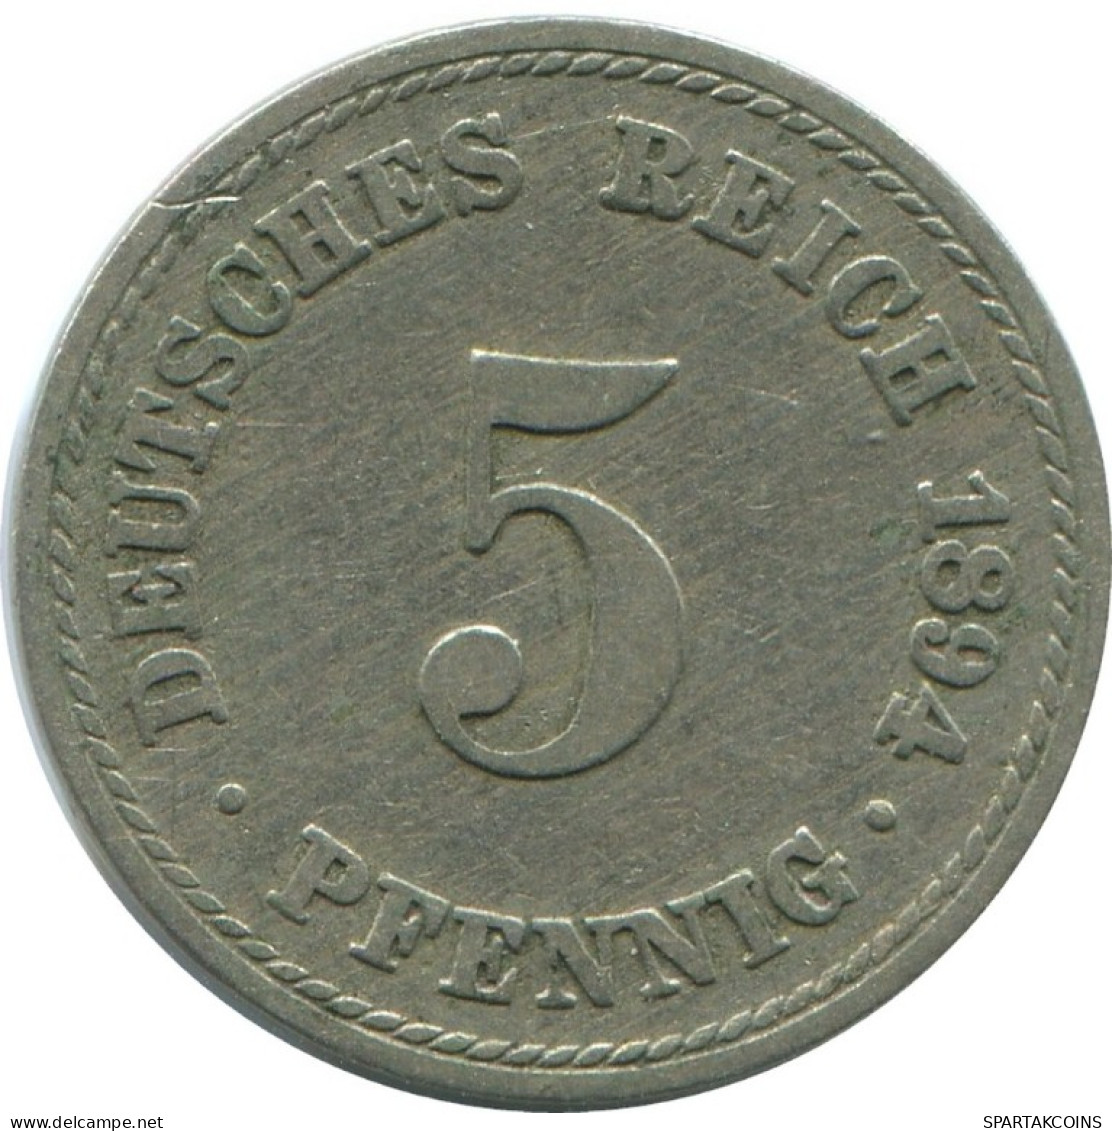 5 PFENNIG 1894 A ALEMANIA Moneda GERMANY #AE679.E.A - 5 Pfennig